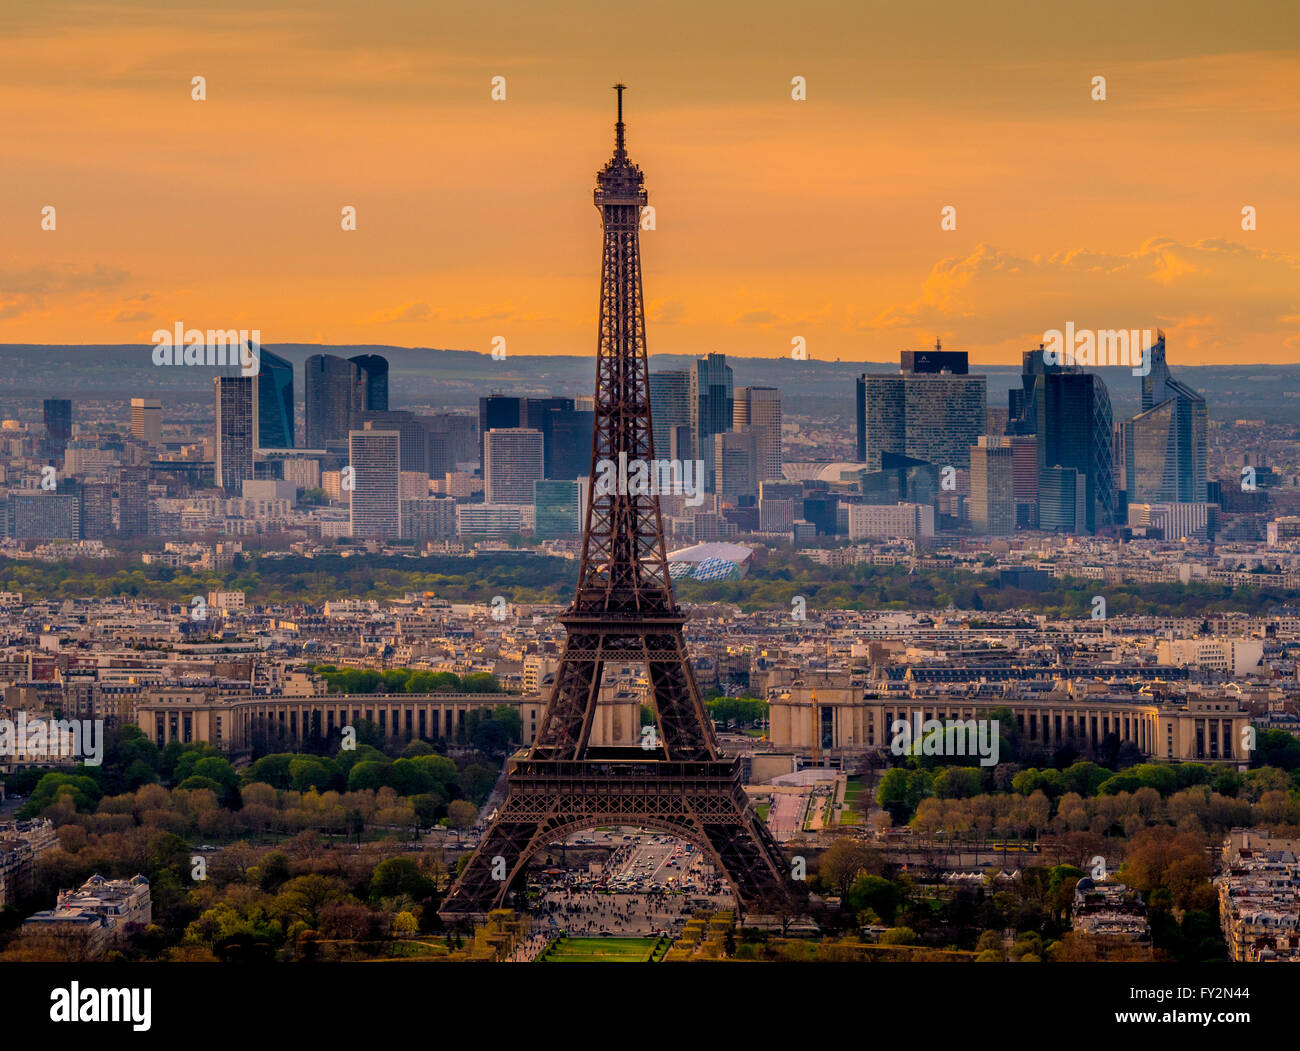 Coucher de soleil sur Paris avec la Tour Eiffel, Paris, France Banque D'Images